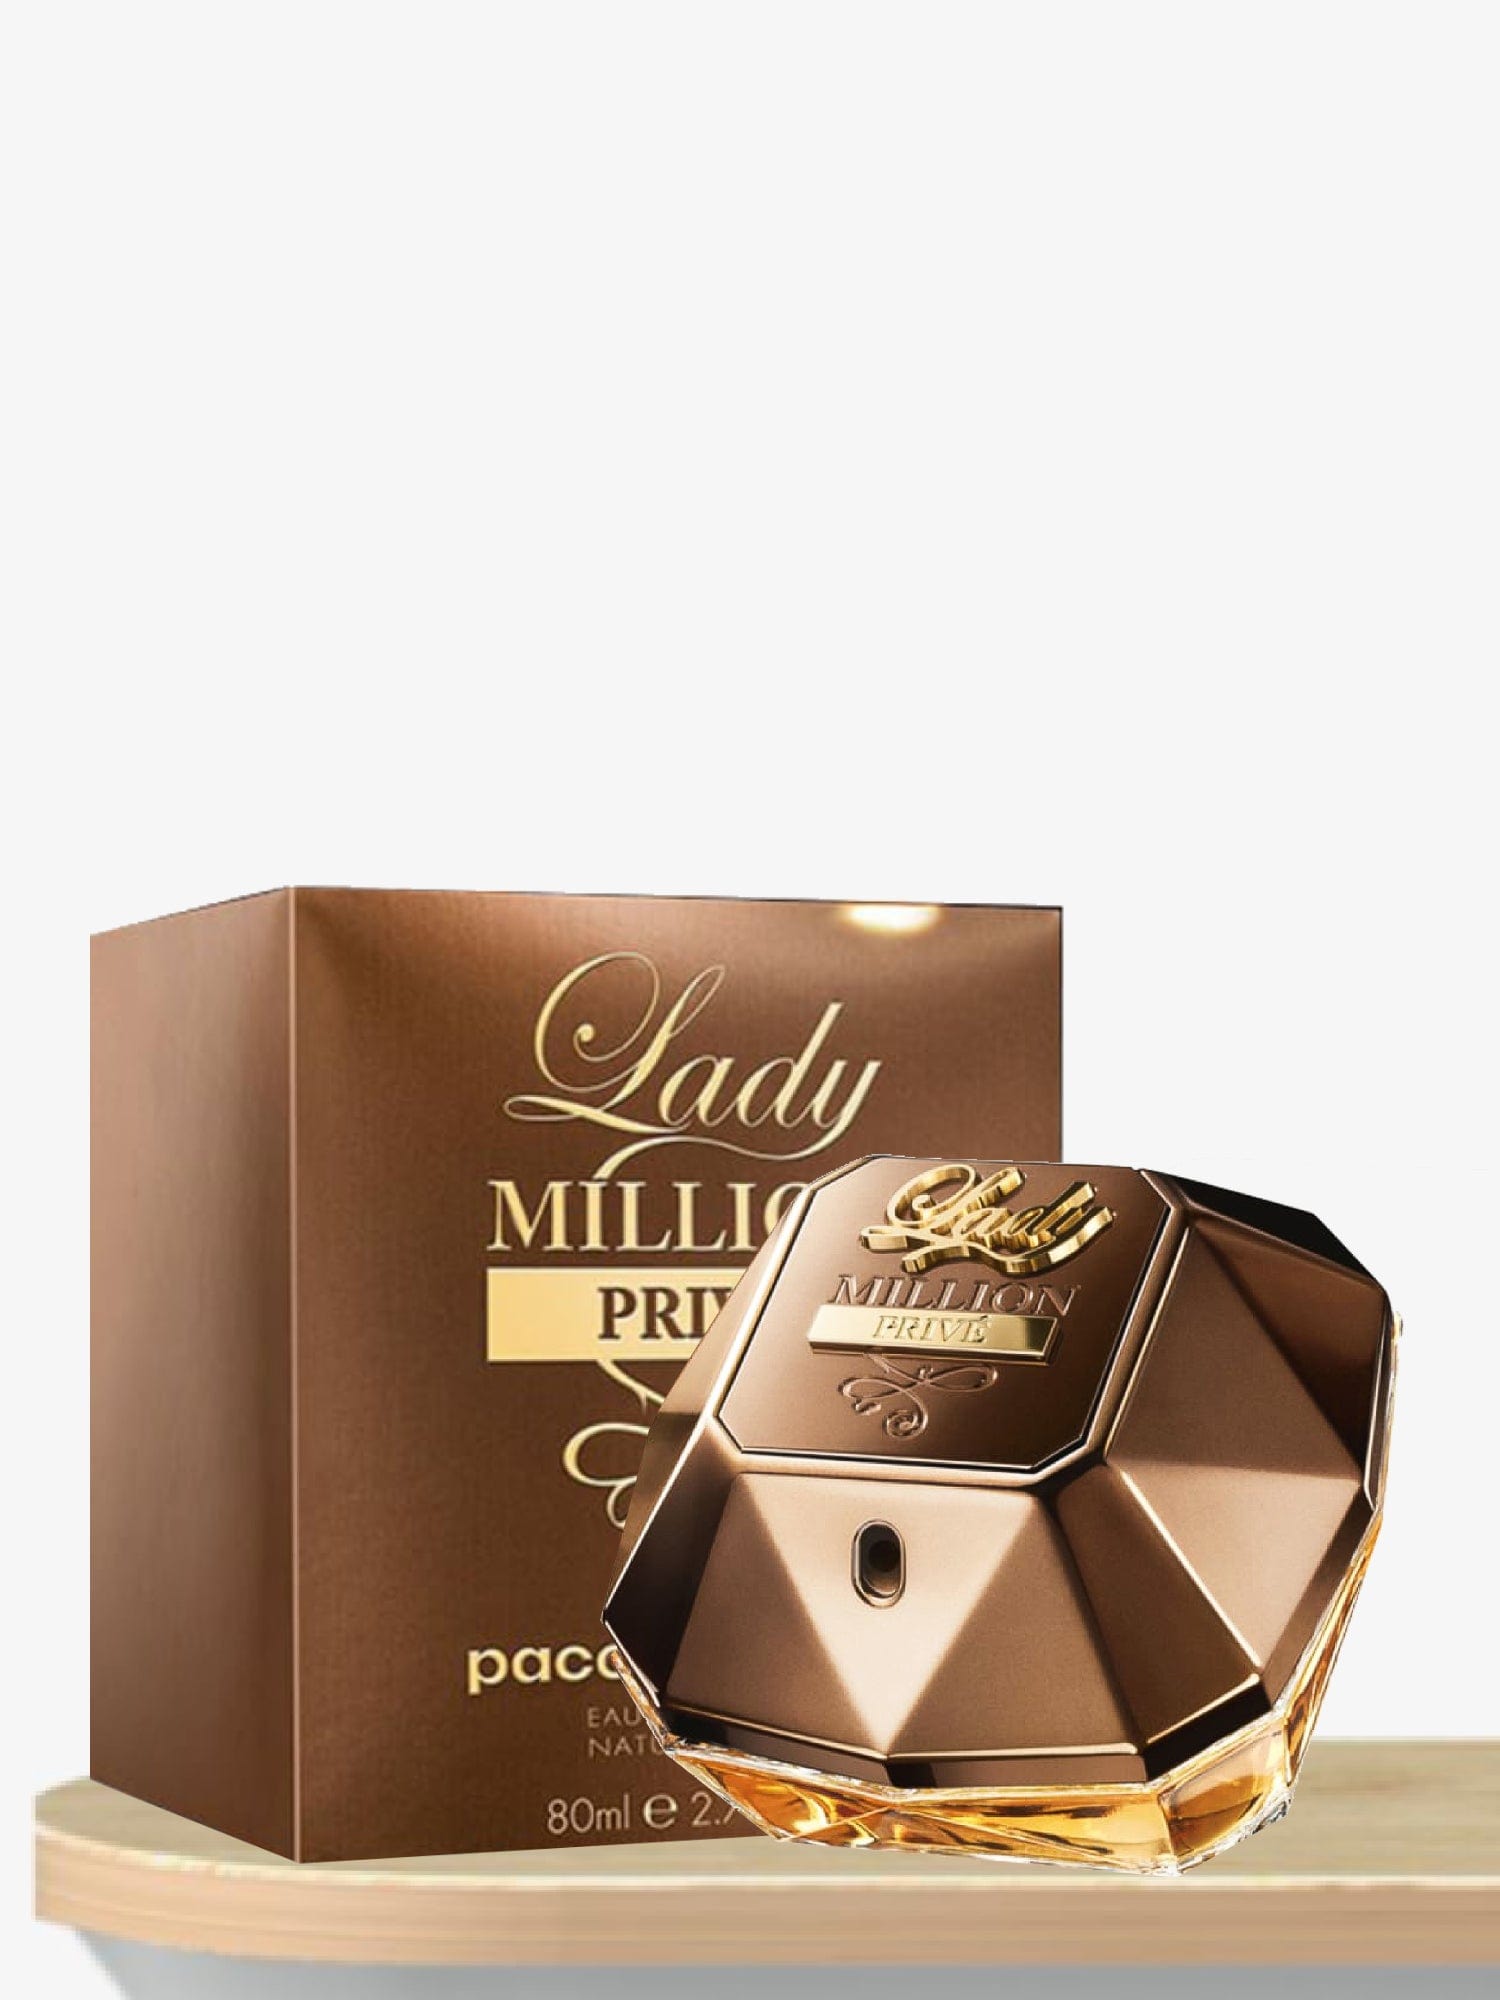 Paco Rabanne Lady Million Prive Eau de Parfum 80 mL / Female